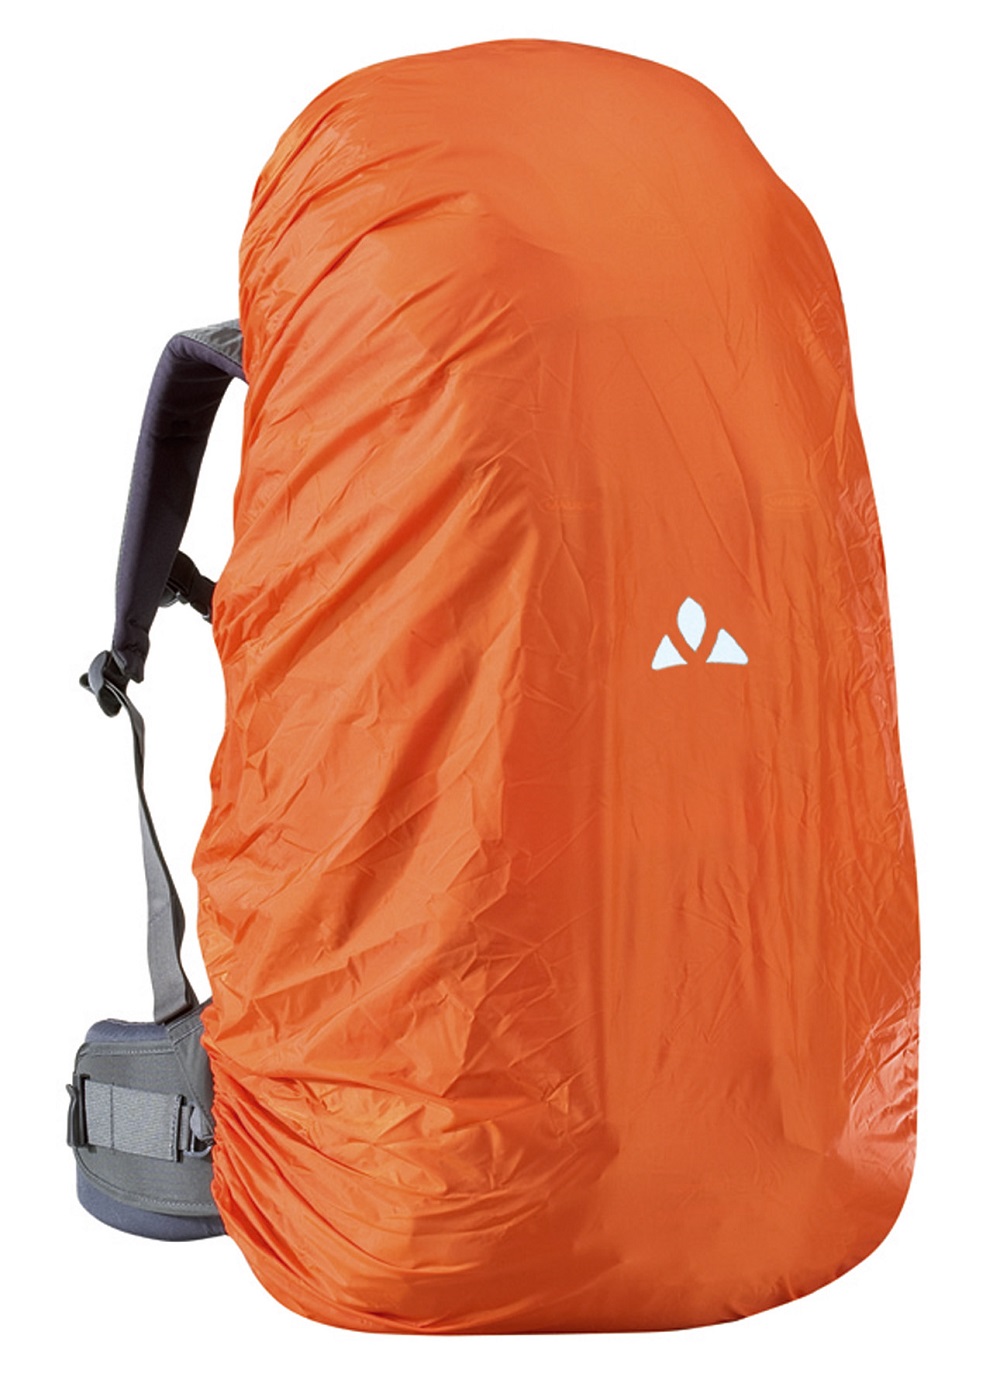 Raincover 30-55 for backpacks